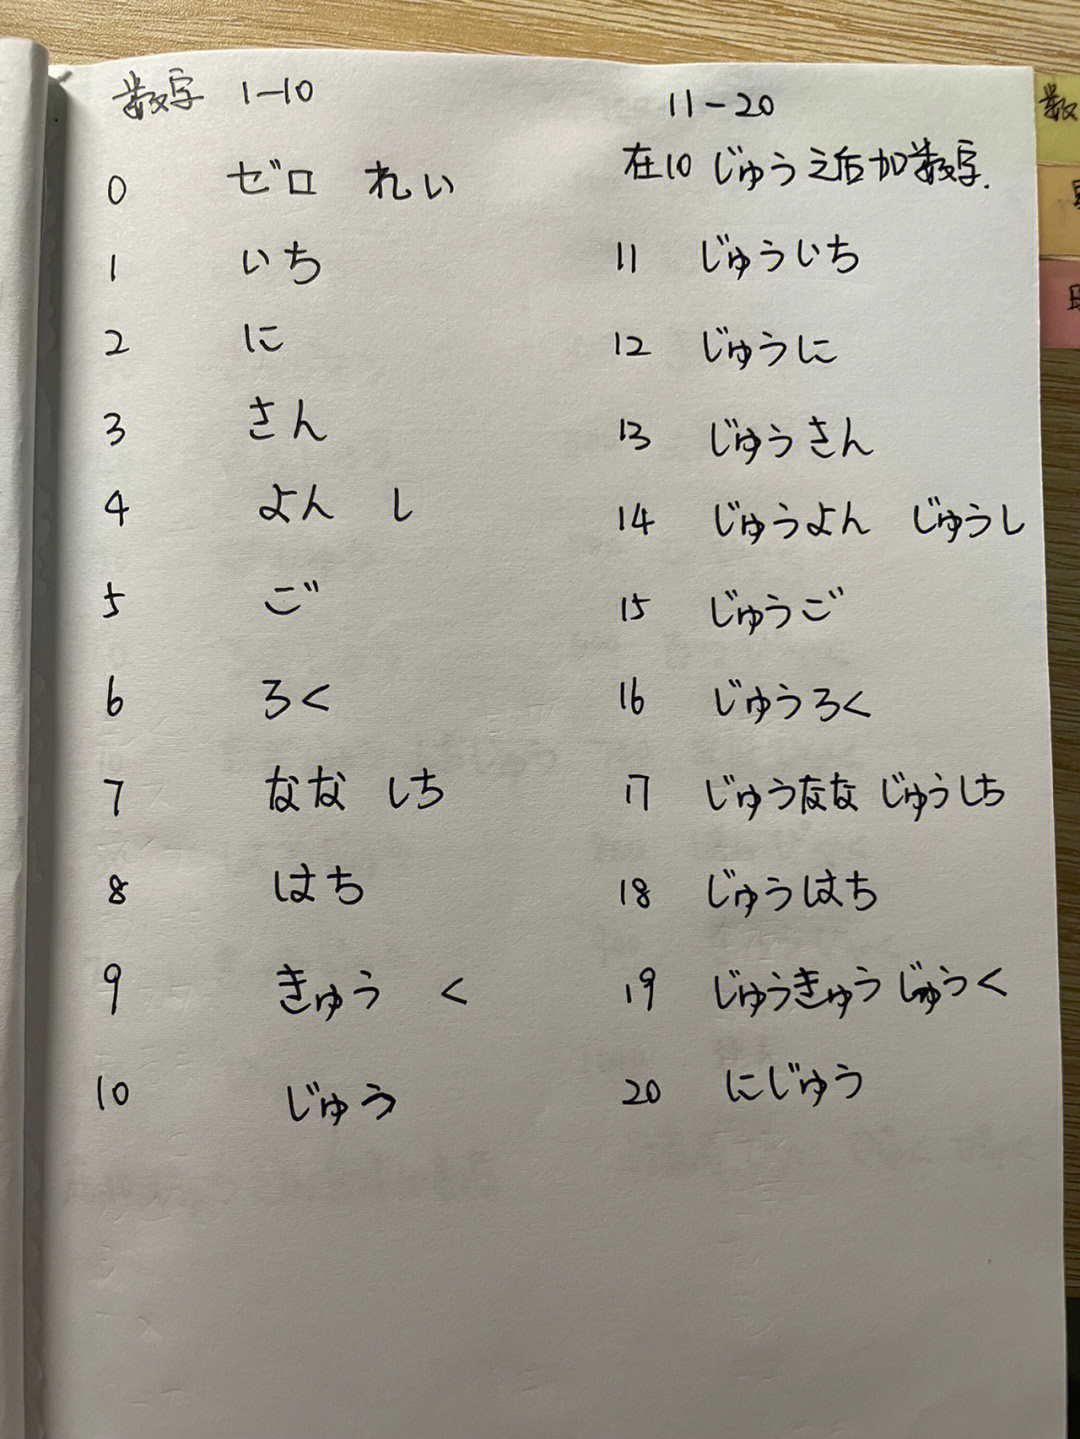 日语数字1到10发音图片